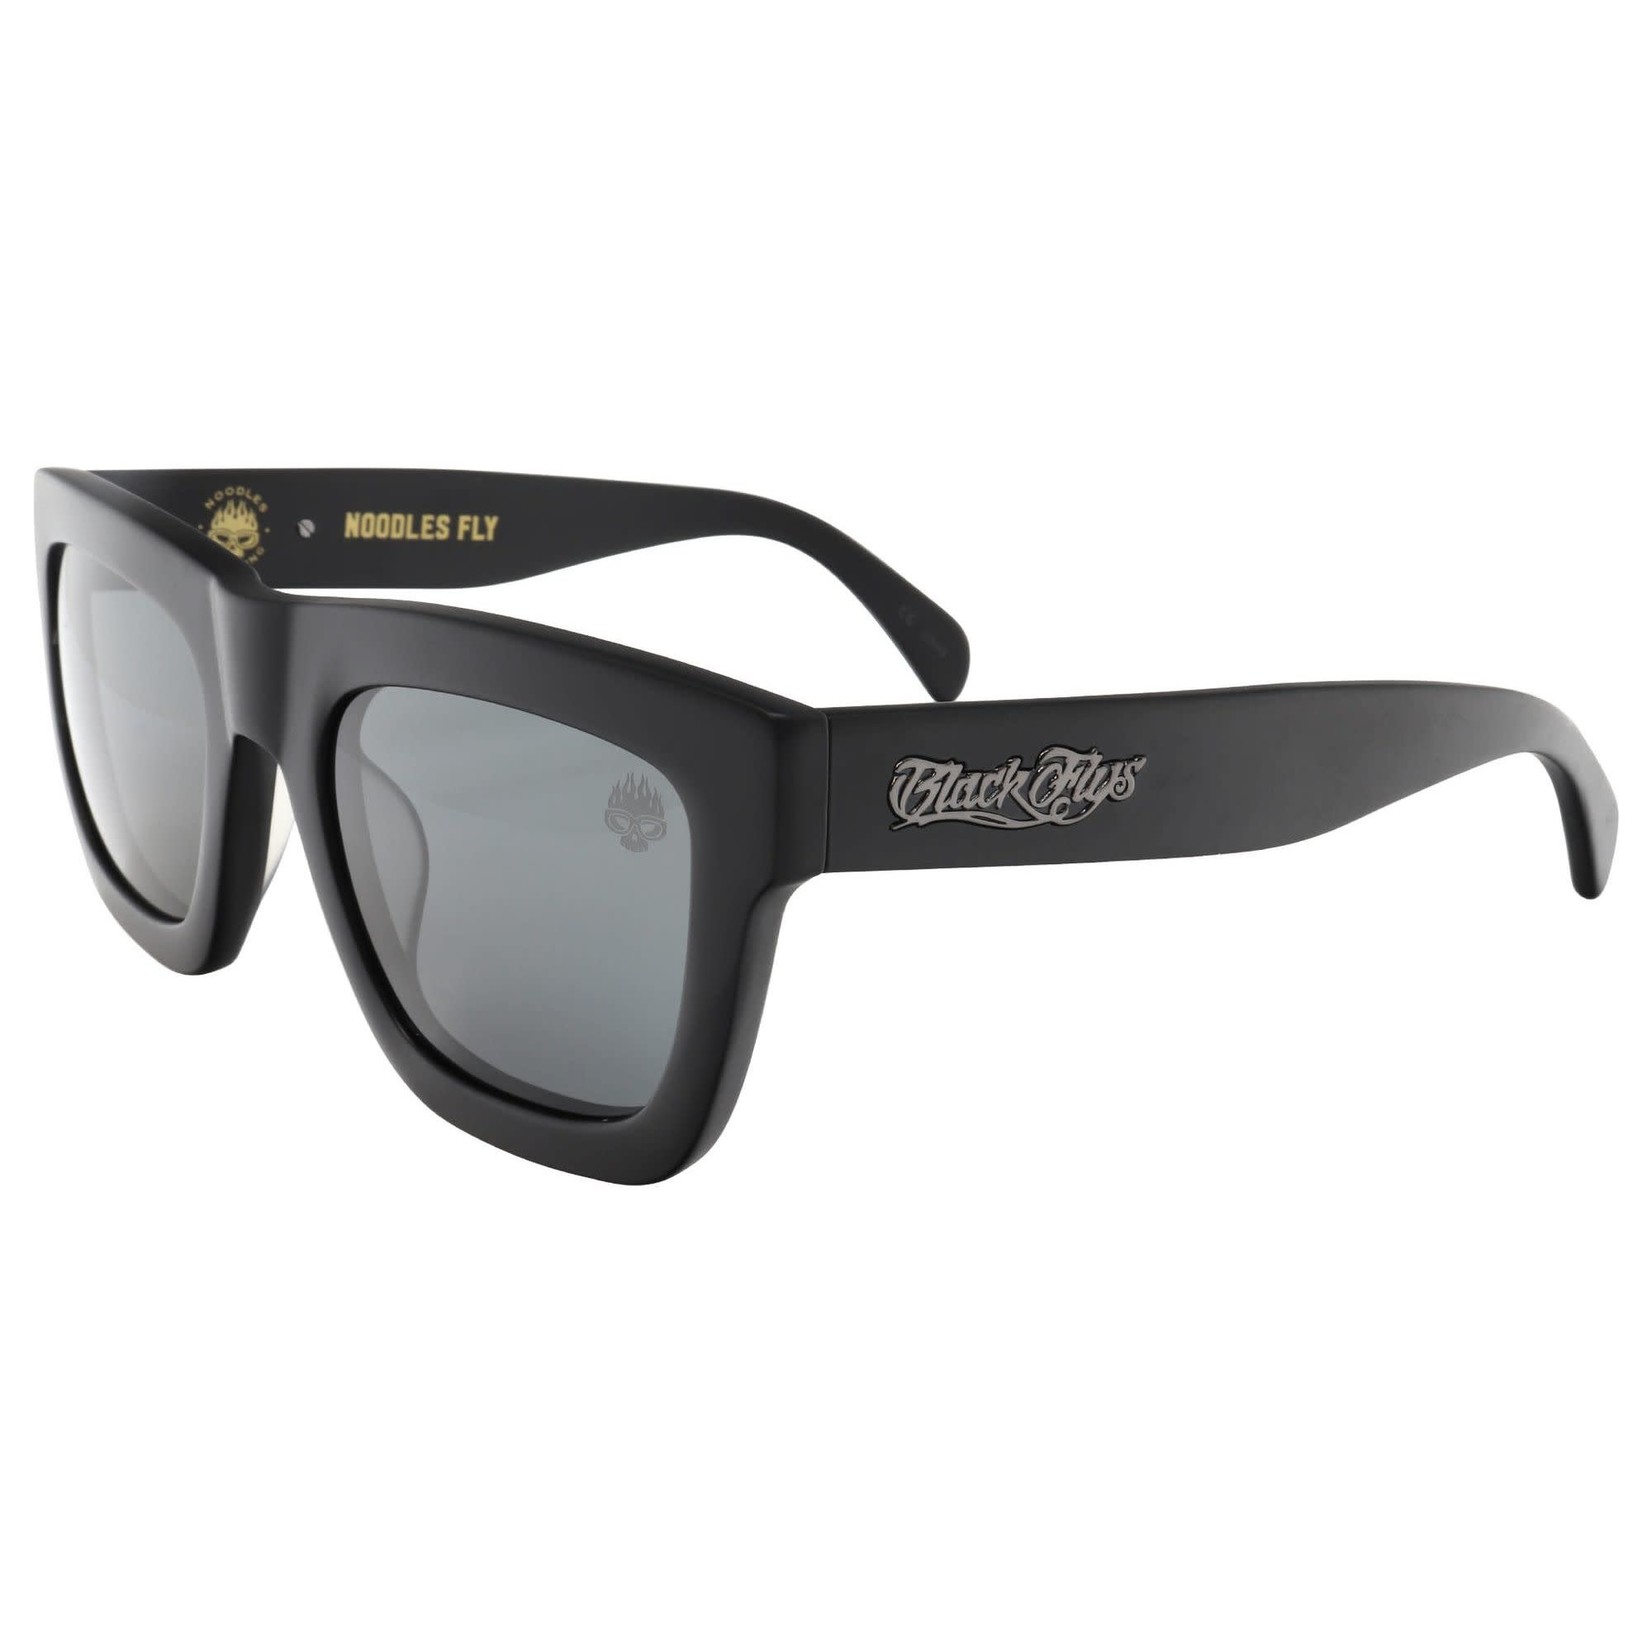 Black Flys Black Flys Noodles Fly Sunglasses - Matte Black/Smoke Lens